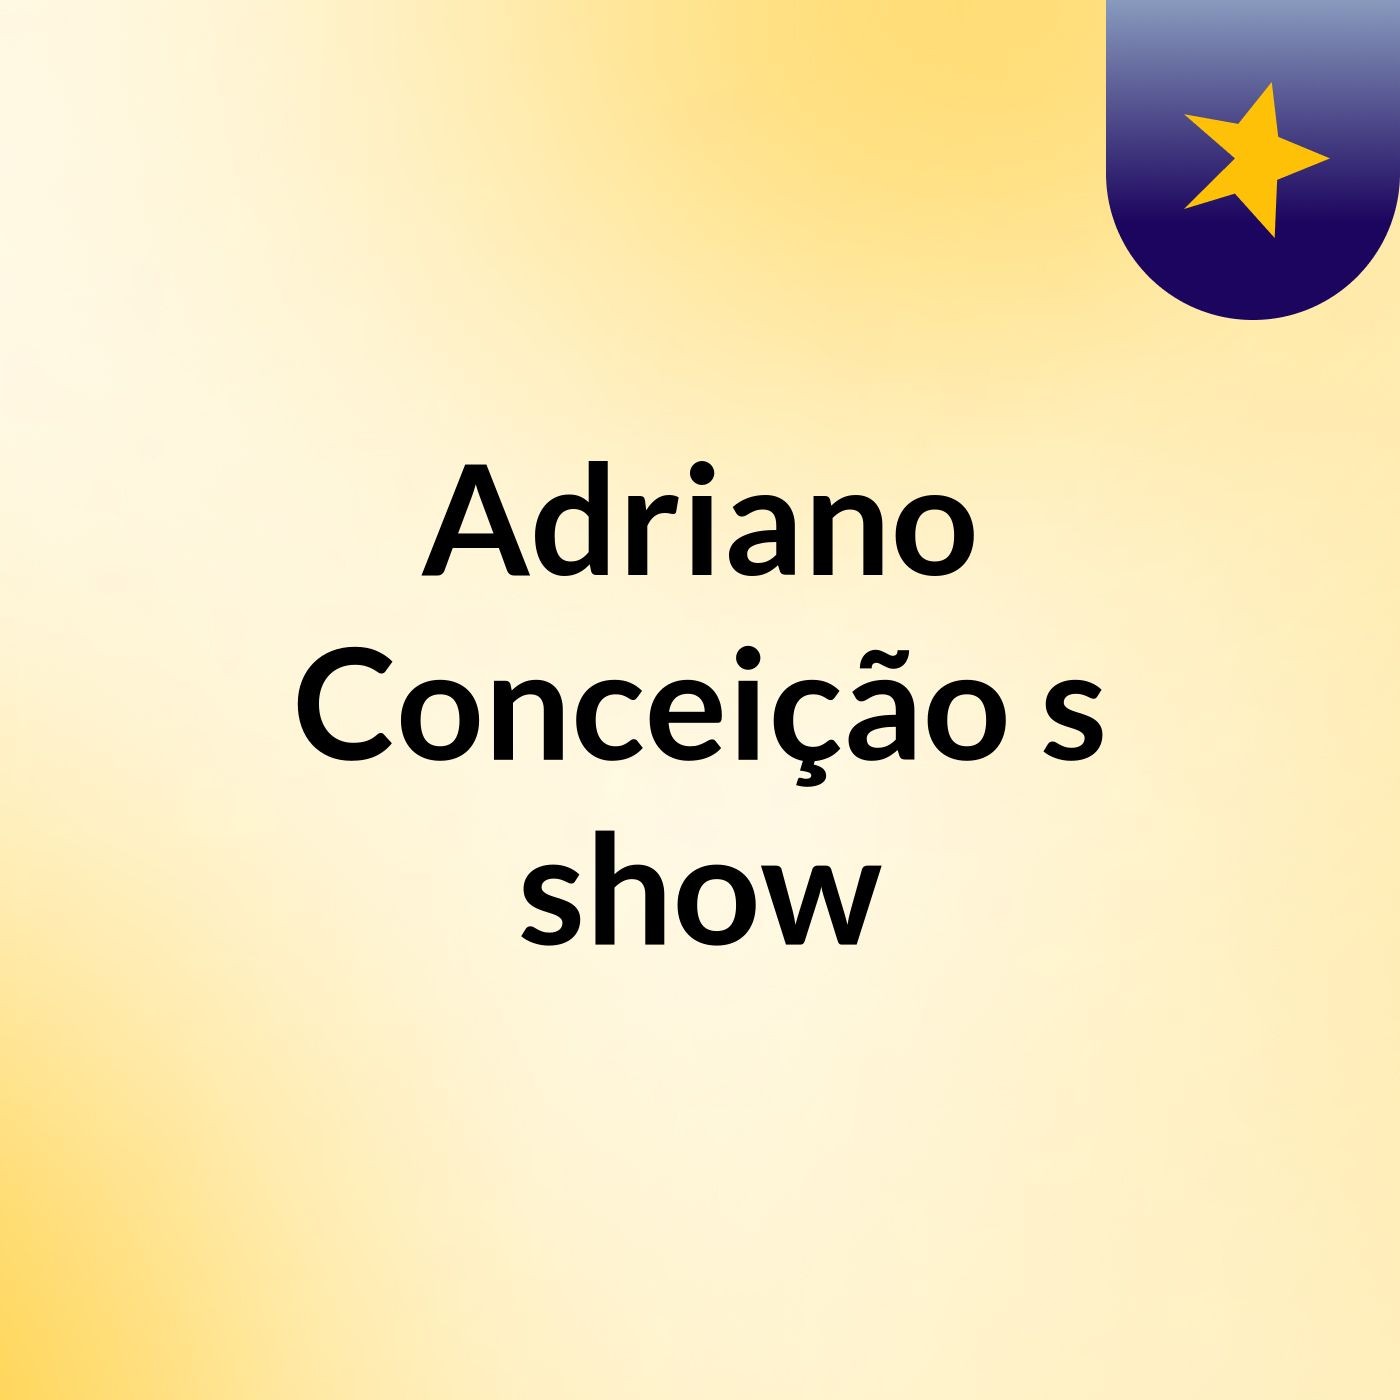 Adriano Conceição's show